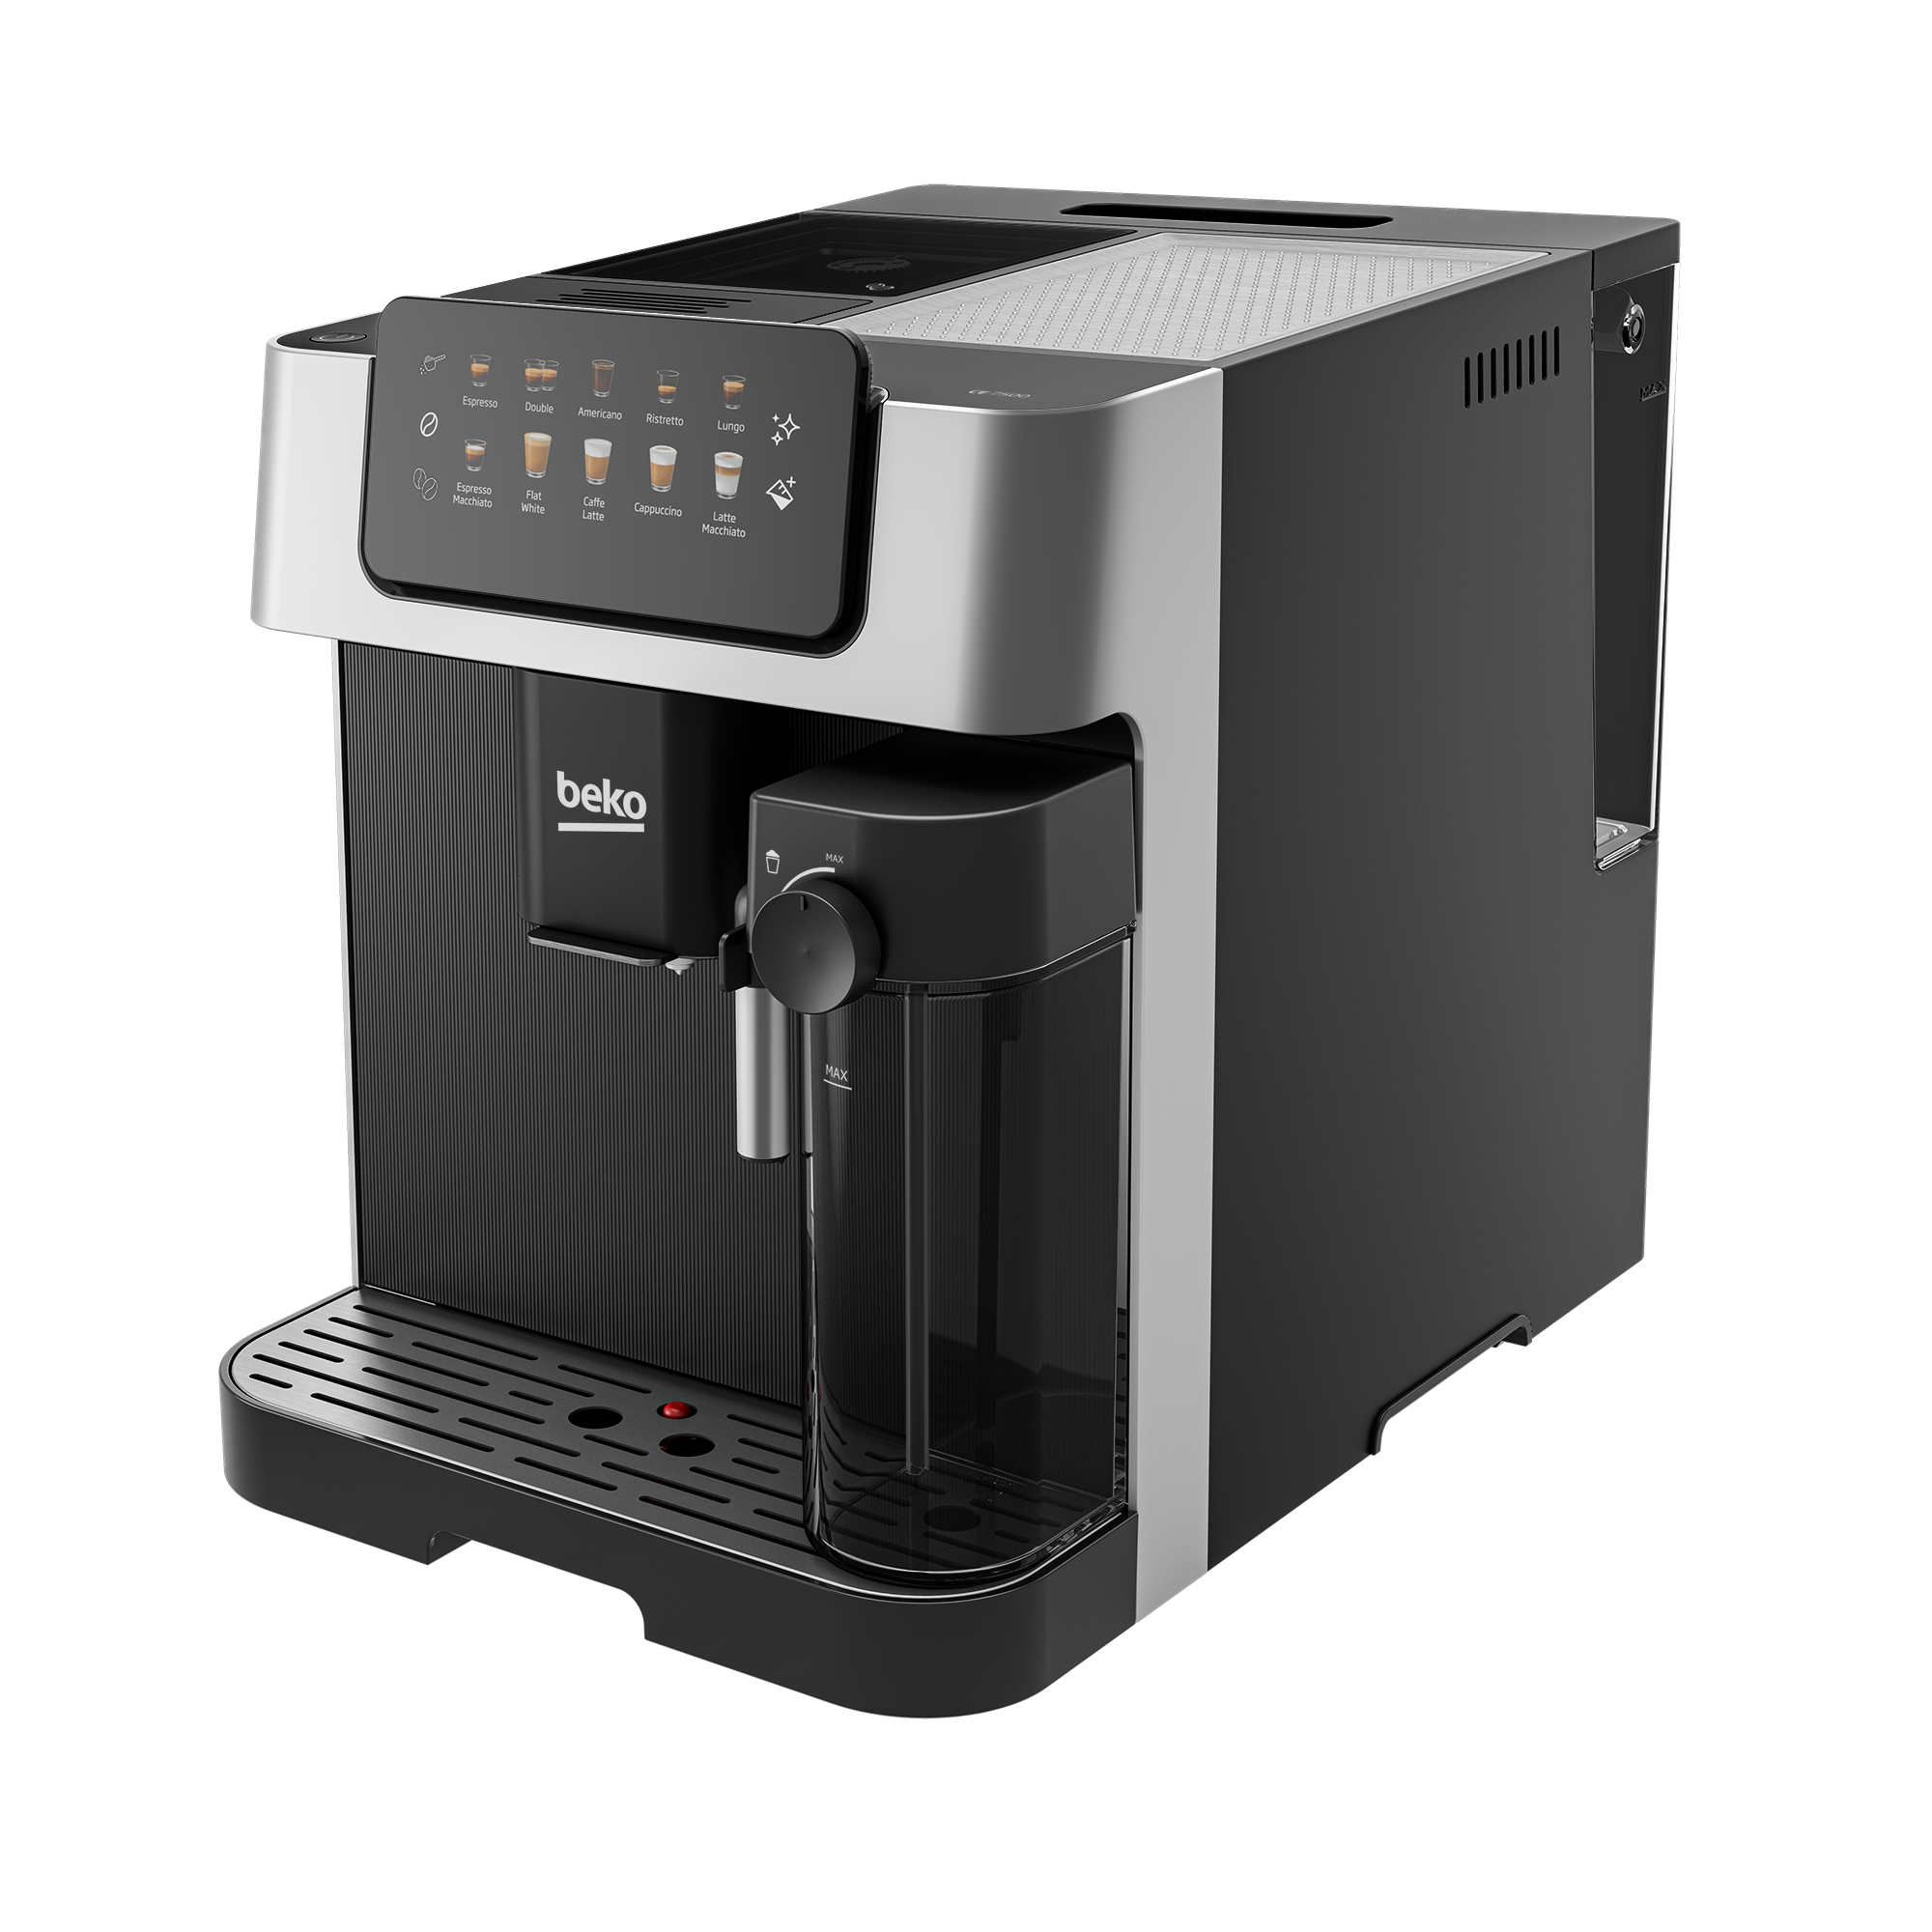 Beko CEG7304X coffee maker